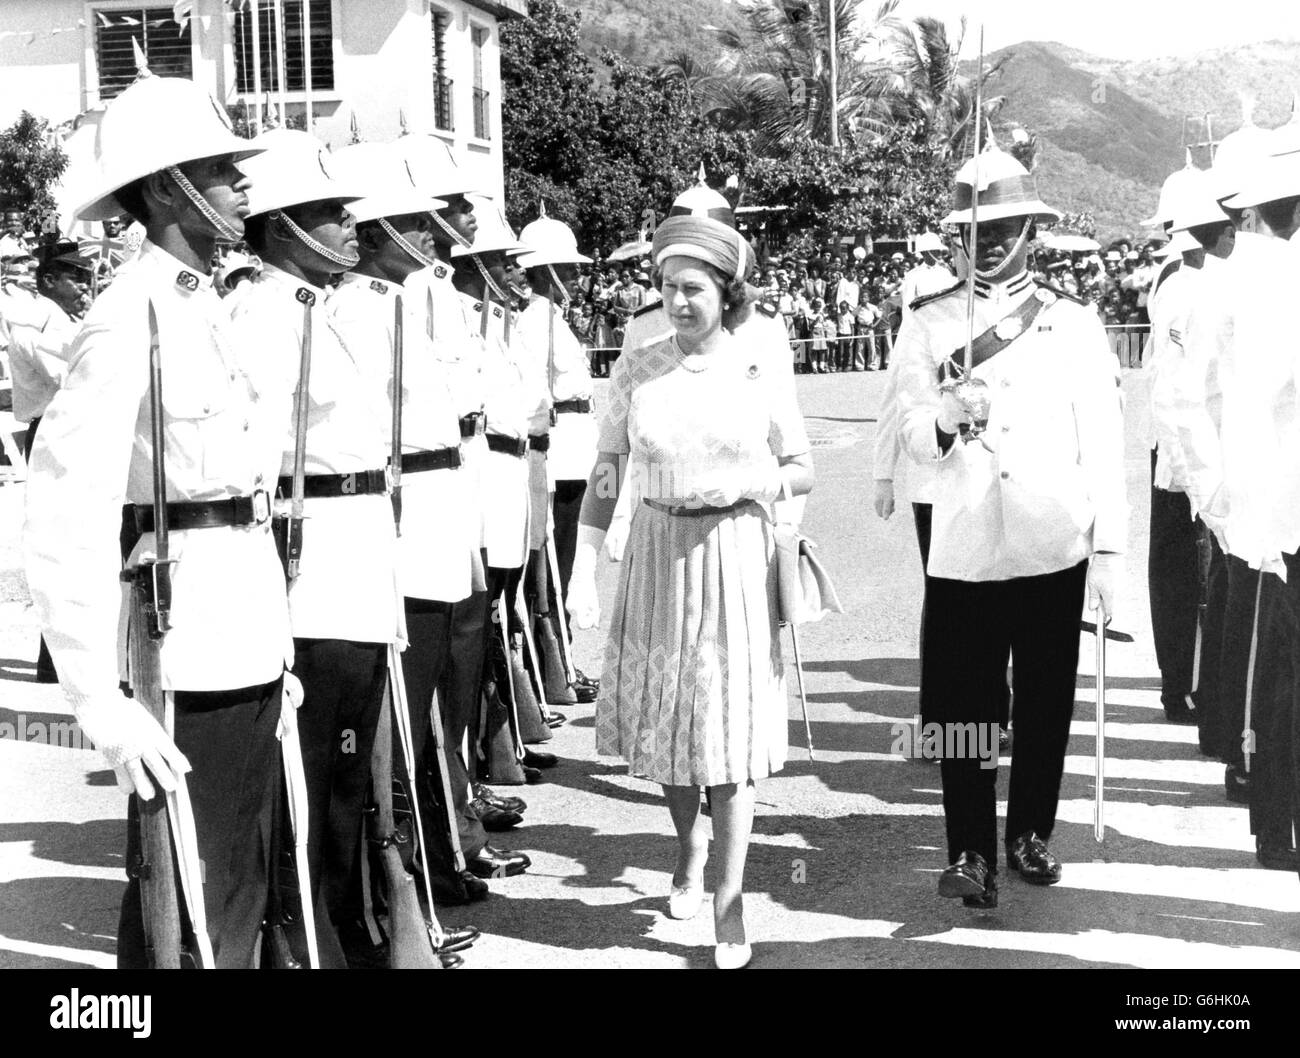 La Reine, escortée par le chef de police, M. R. K. Jones, inspectant une garde d'honneur de la police des îles Vierges royales à Trotola mercredi, lorsqu'elle et le prince Philip ont visité les îles Vierges britanniques dans le cadre de la visite jubliée d'argent des Antilles. Banque D'Images